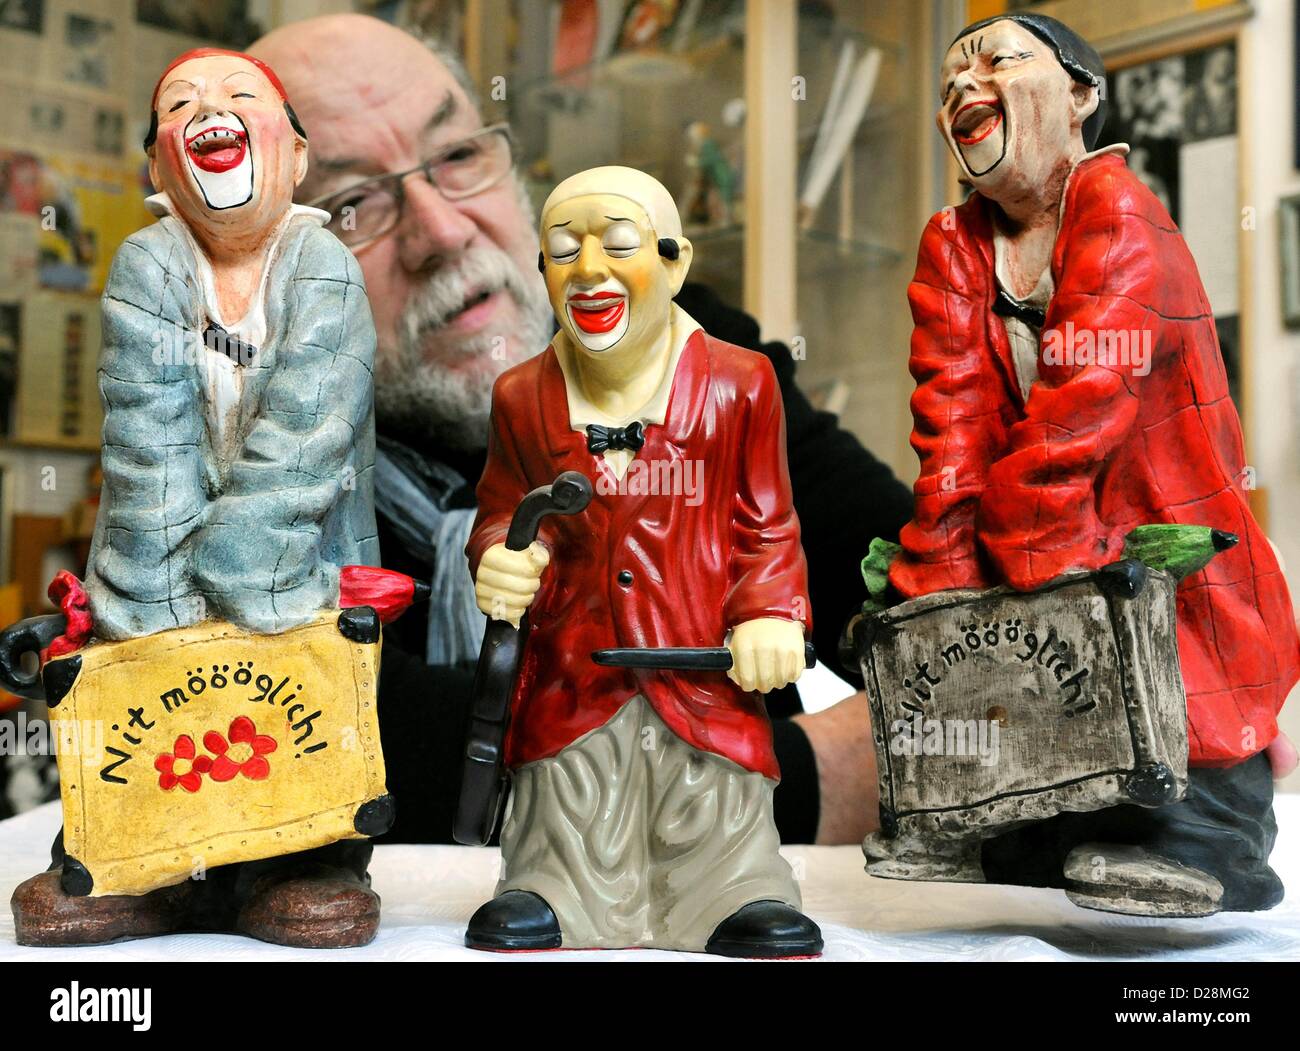 Sammler von Clown Erinnerungsstücke und Direktor des "Clownmuseum", Hans-Dieter Hormann (hinten), stellt sich hinter einer Reihe von Clowns, die Darstellung der berühmte Schweizer Clown-Imitator Clown Grock (1880-1959) in seinem Museum in Leipzig, Deutschland, 14 Januayr 2013. Ehemalige Bauingenieur Hormann hat rund 3,500 Clowns aus der ganzen Welt gesammelt und stellt sie in seinem Clownmuseum, die im Jahr 2011 gegründet wurde. Foto: Waltraud Grubitzsch Stockfoto